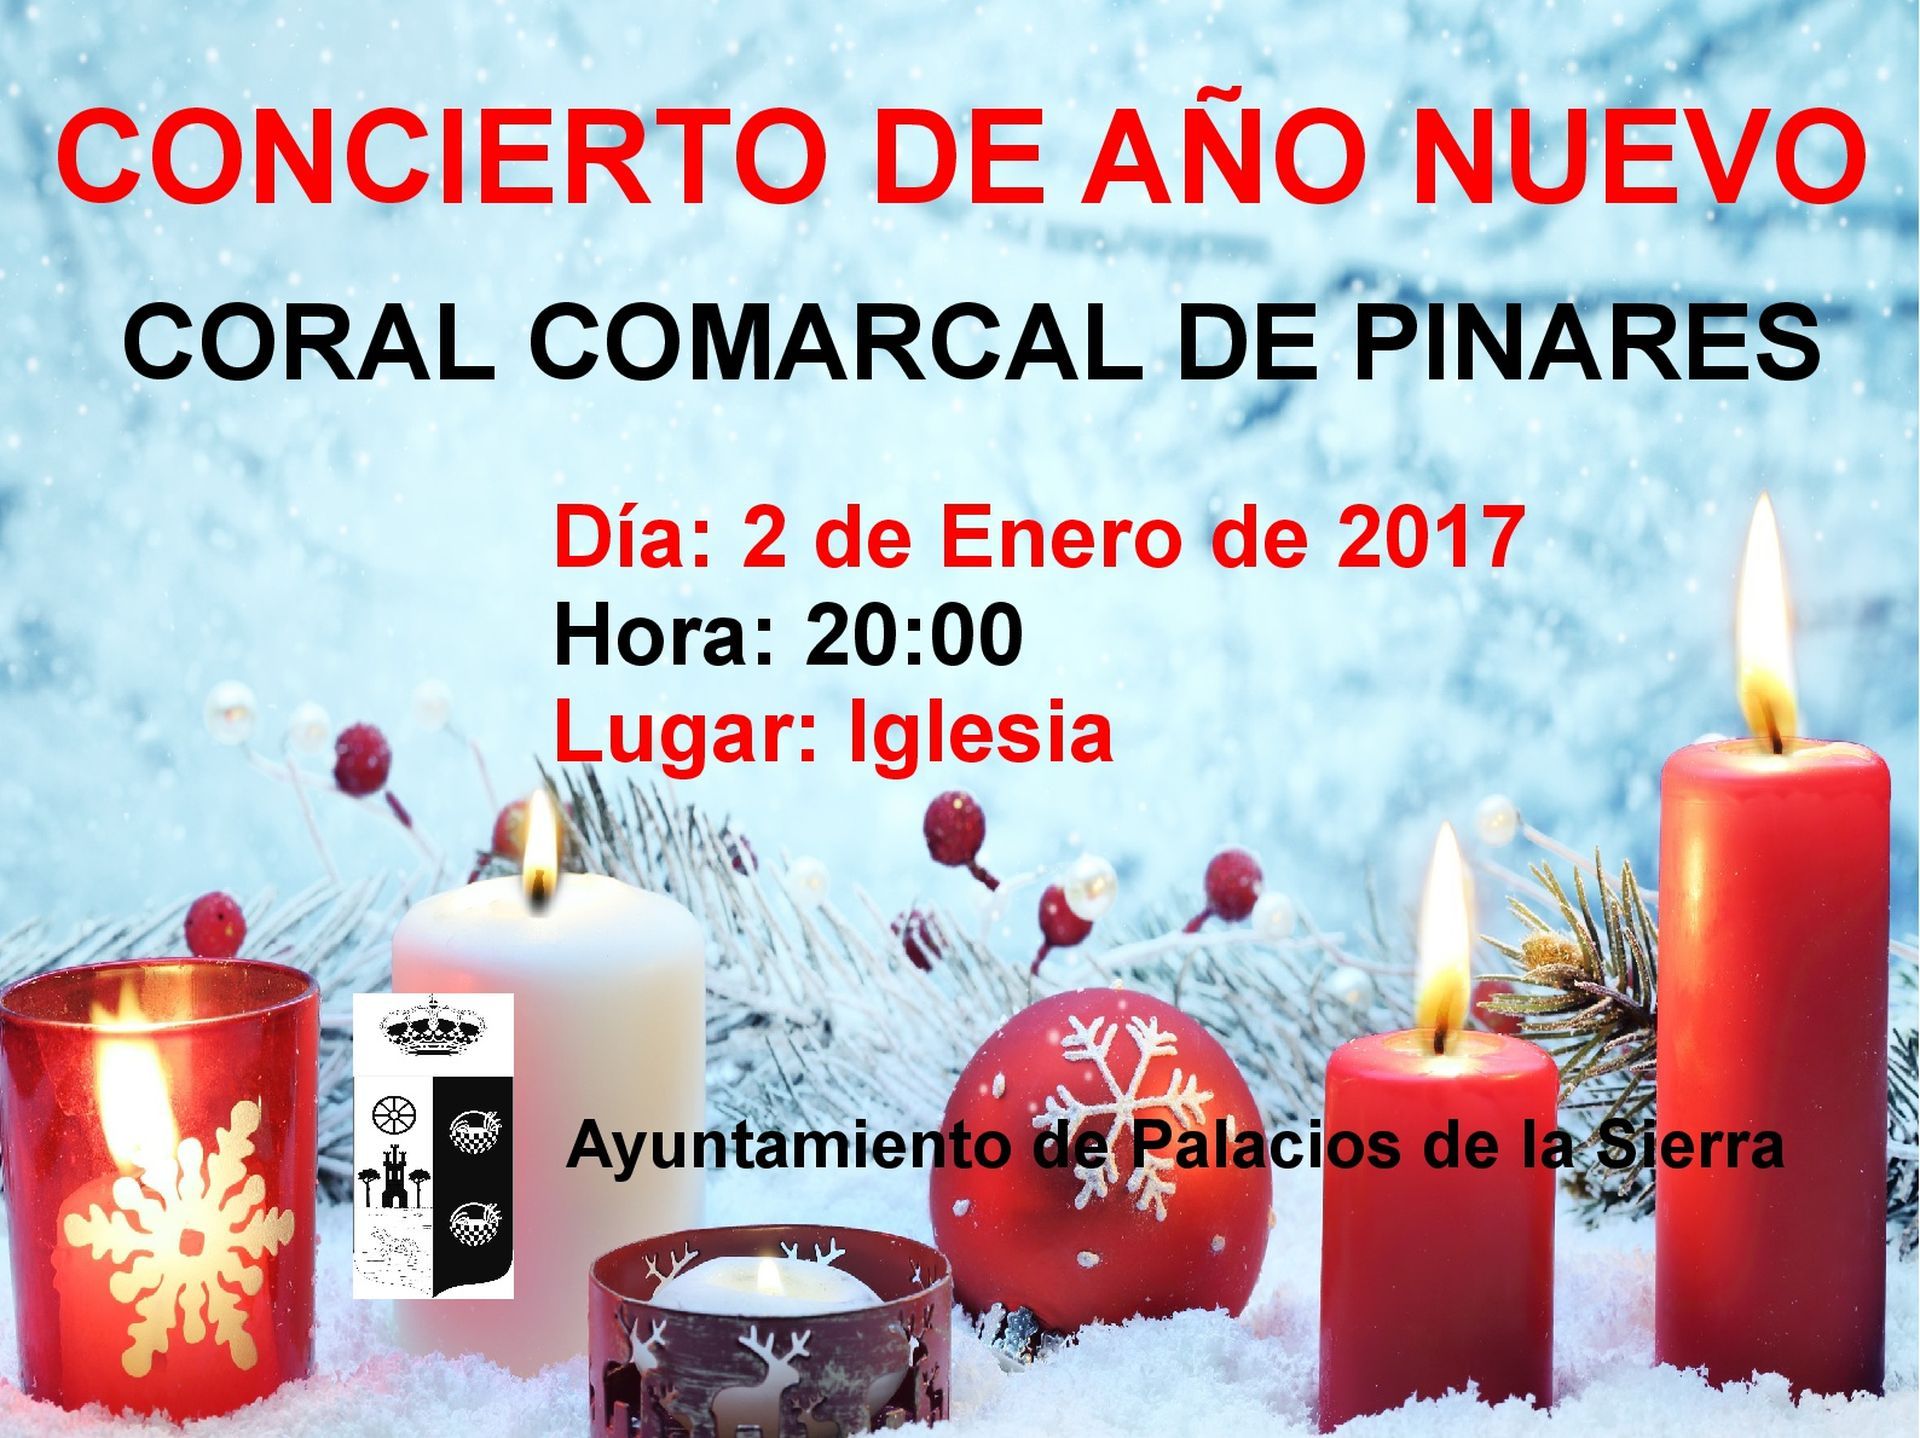 Concierto de Año Nuevo de la Coral Comarcal de Pinares